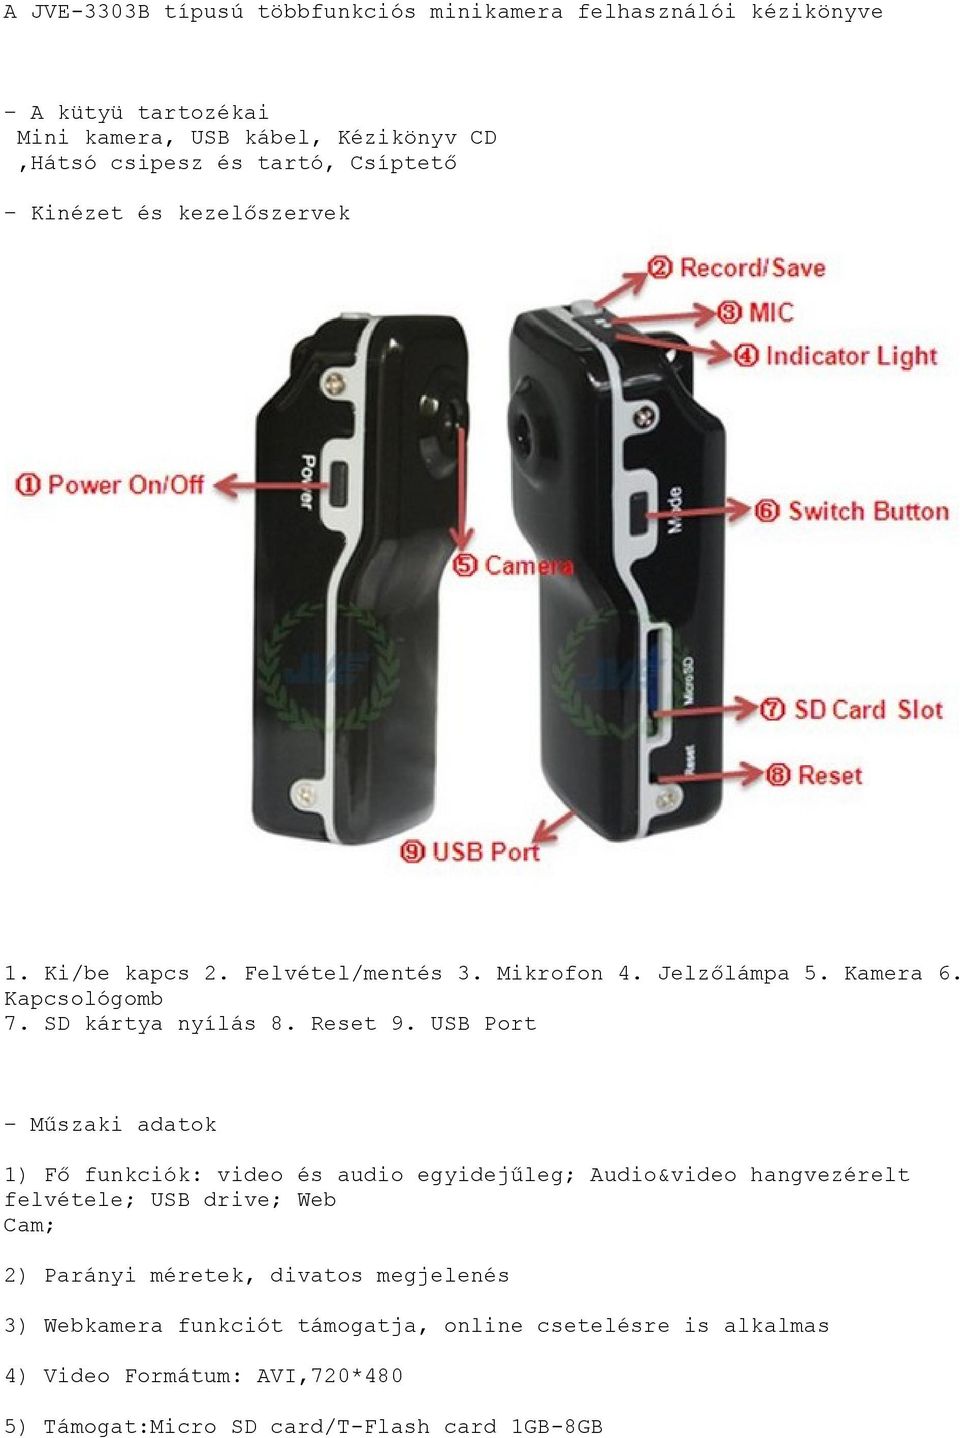 A JVE-3303B típusú többfunkciós minikamera felhasználói kézikönyve - PDF  Ingyenes letöltés